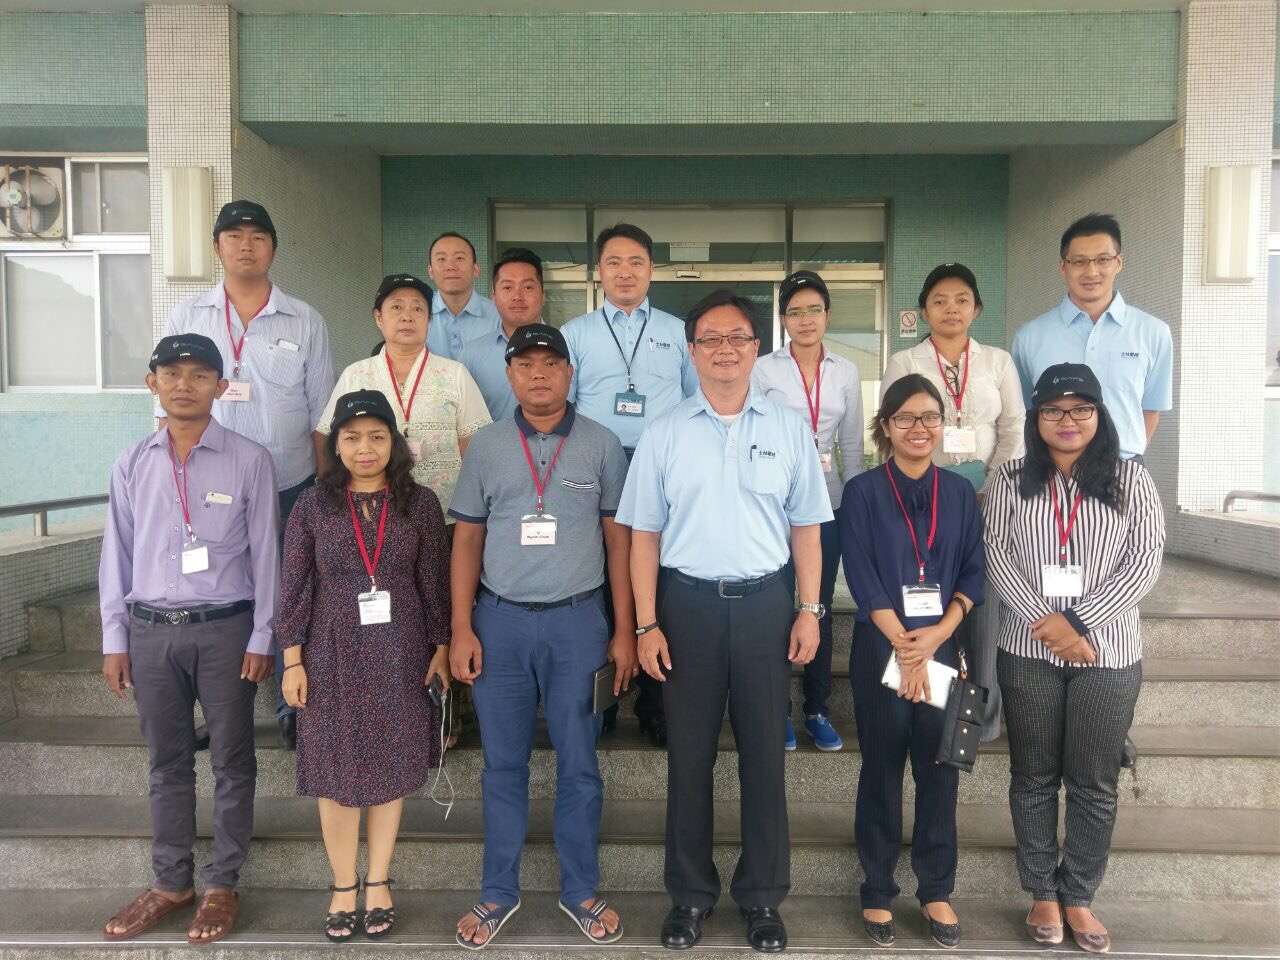 Los clientes de Myanmar visitan Shihlin Electric